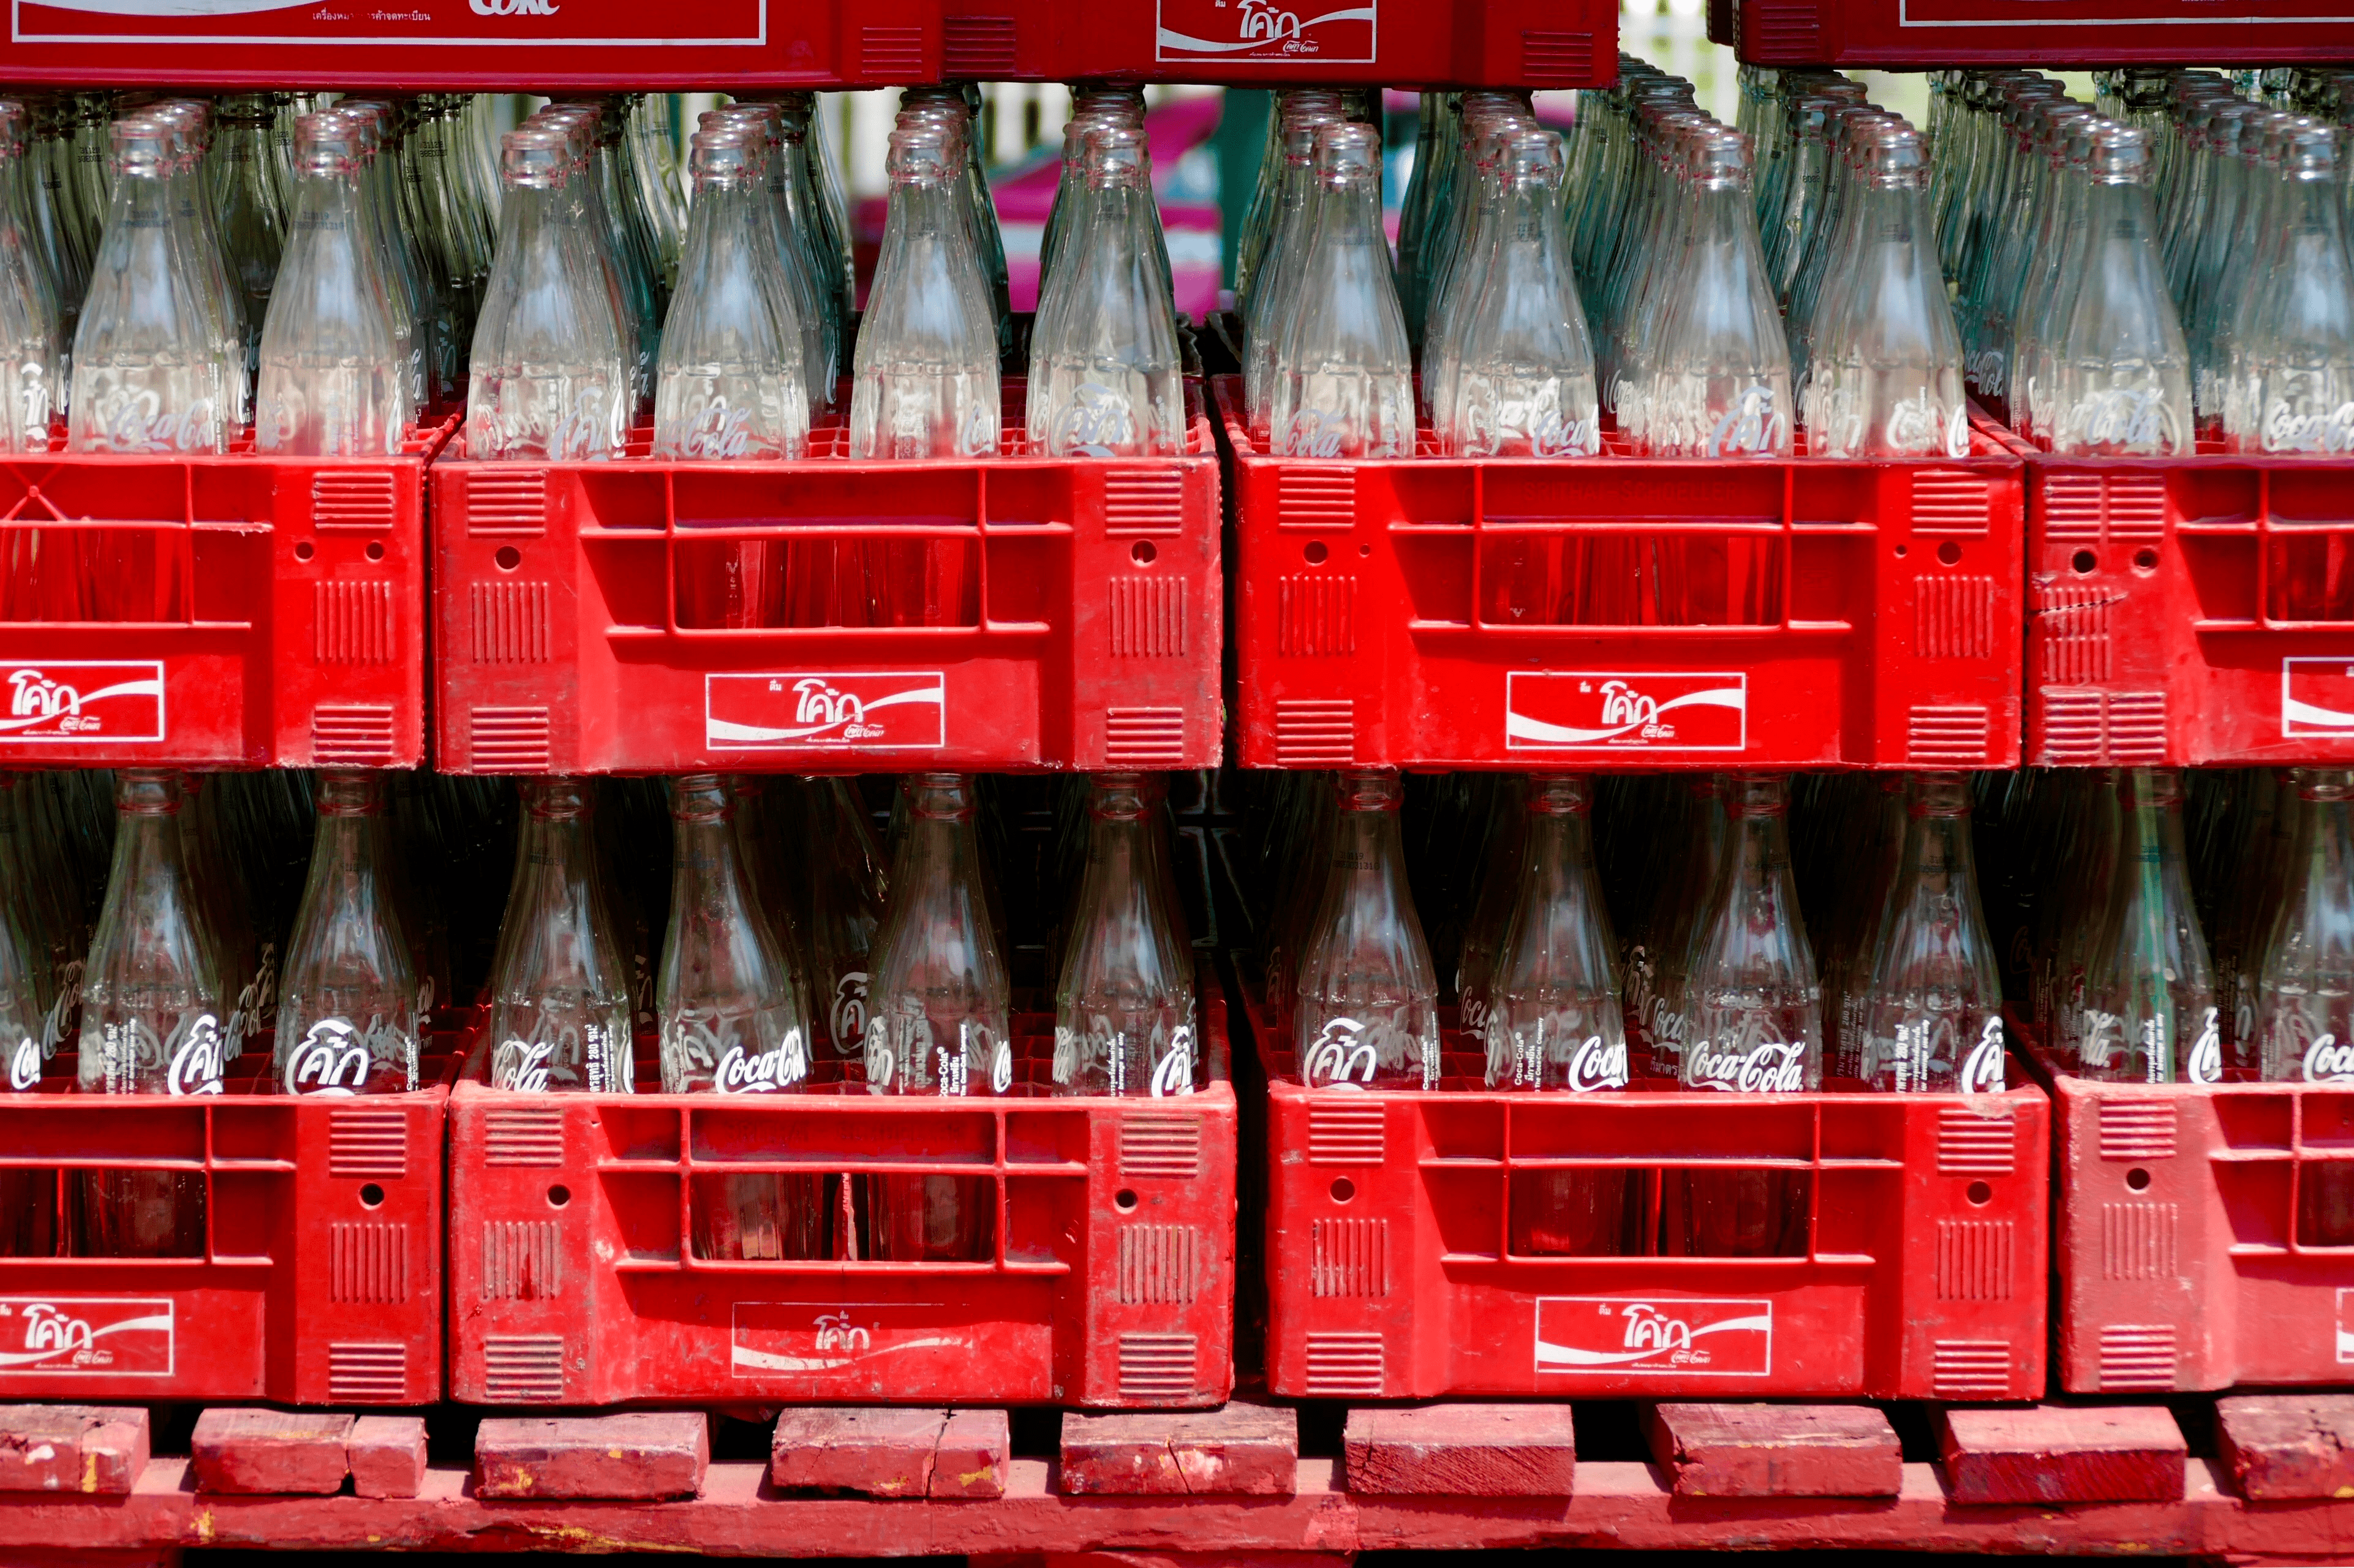 Foto de vários engradados com garrafas de refrigerante Cocacola, os engradados estão empilhados um em cima do outro.